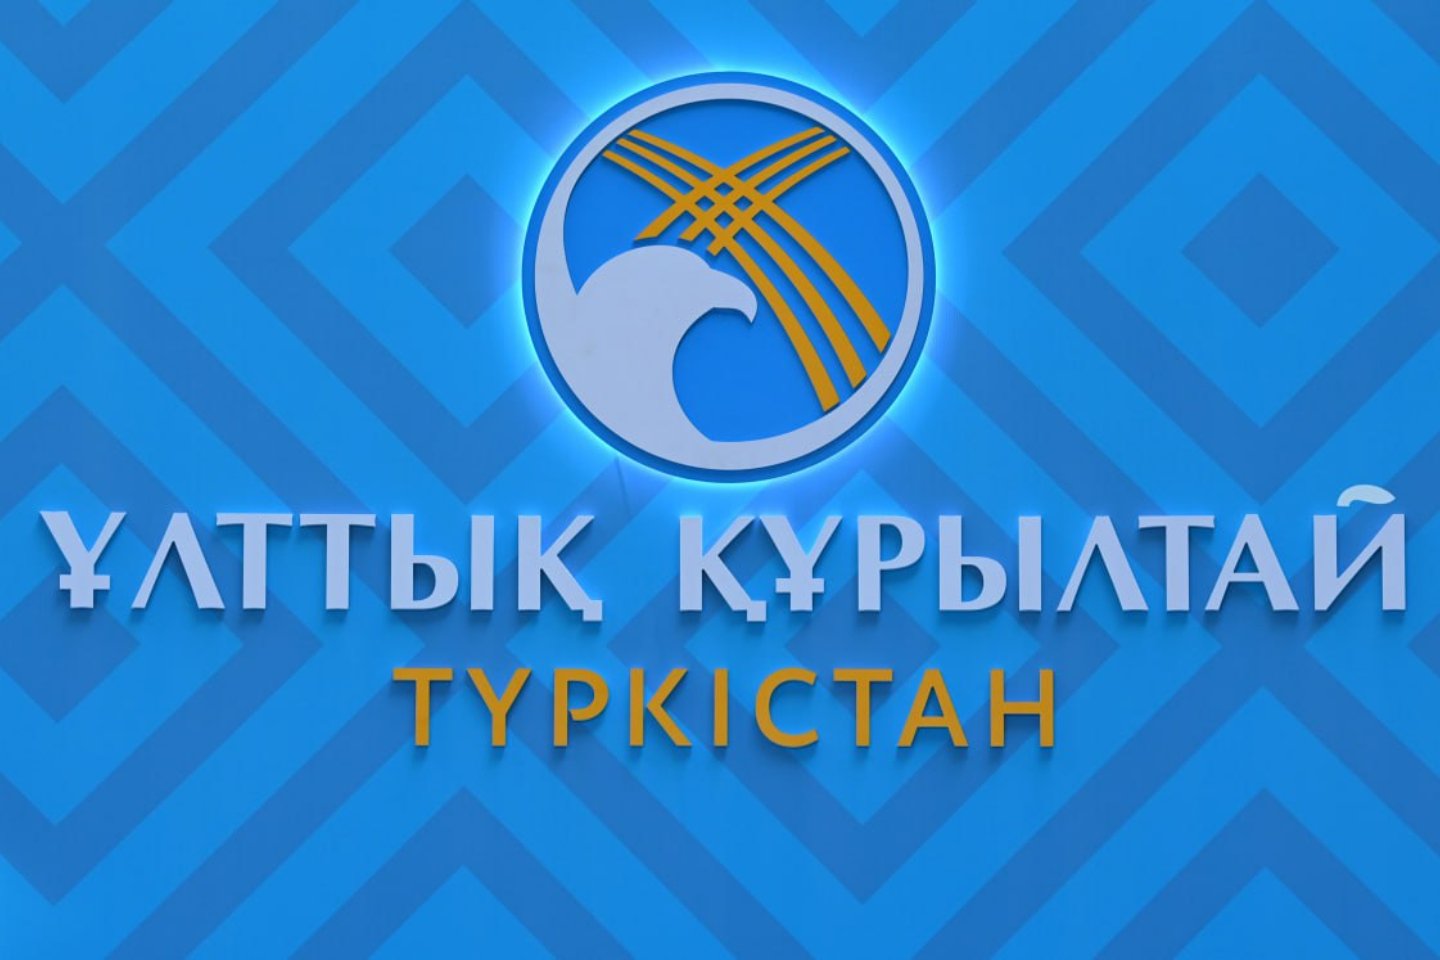 Новости Казахстана / Политика в Казахстане / В субботу в Туркестане пройдет заседание Национального курултая